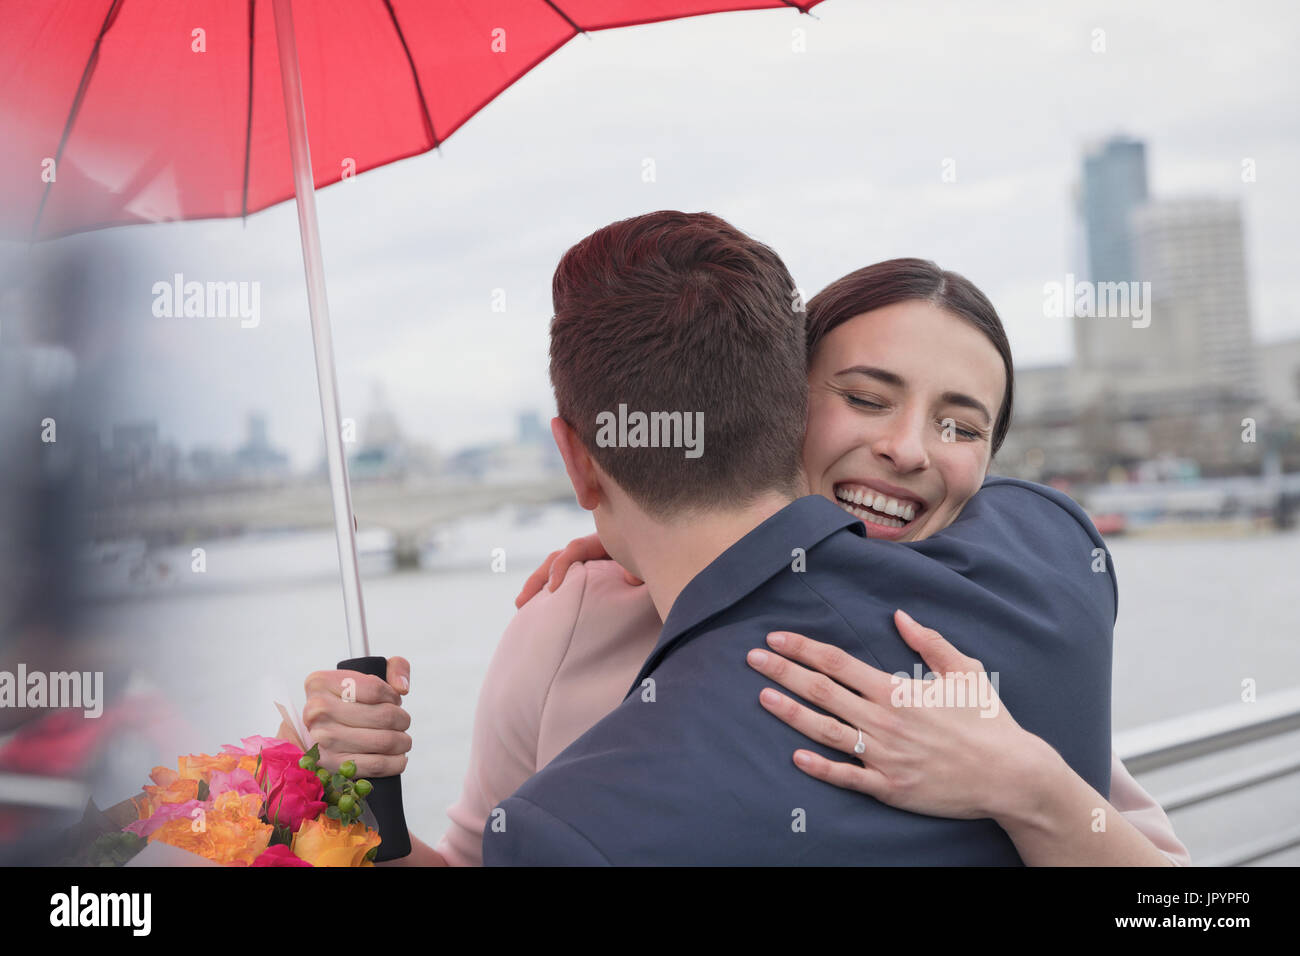 Lächelnd, liebevolle paar mit Sonnenschirm und Blumen umarmt auf städtische Brücke, London, UK Stockfoto